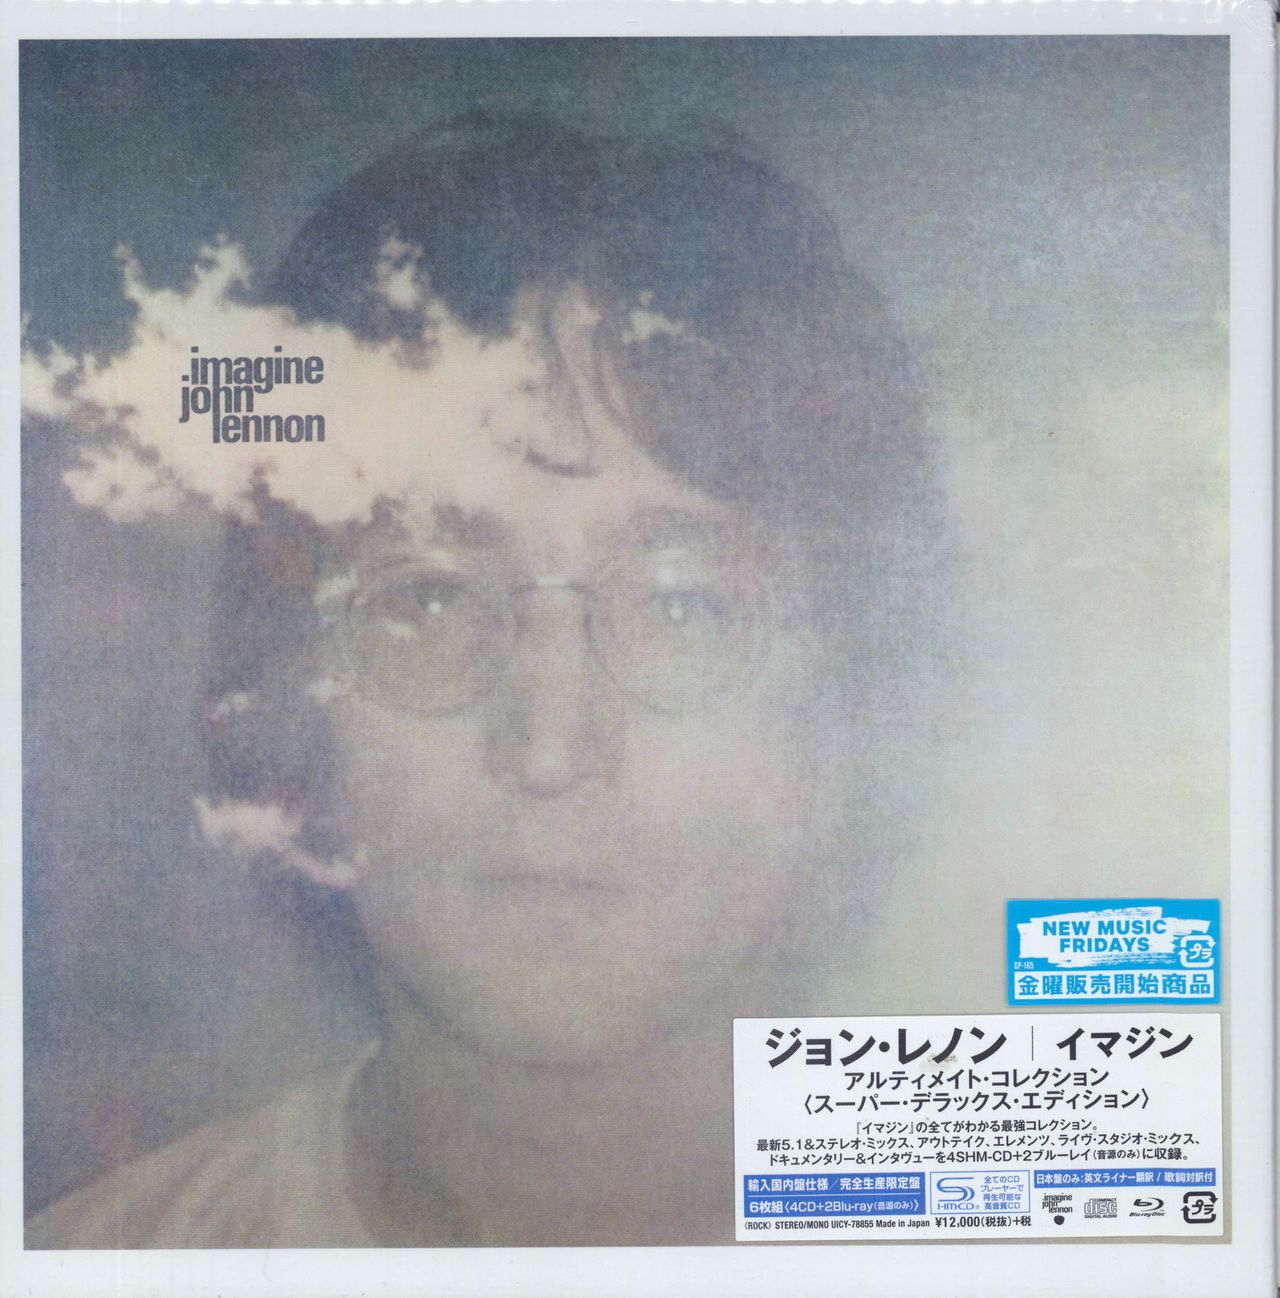 John Lennon Imagine: The Ultimate Collection Japanese Cd album box